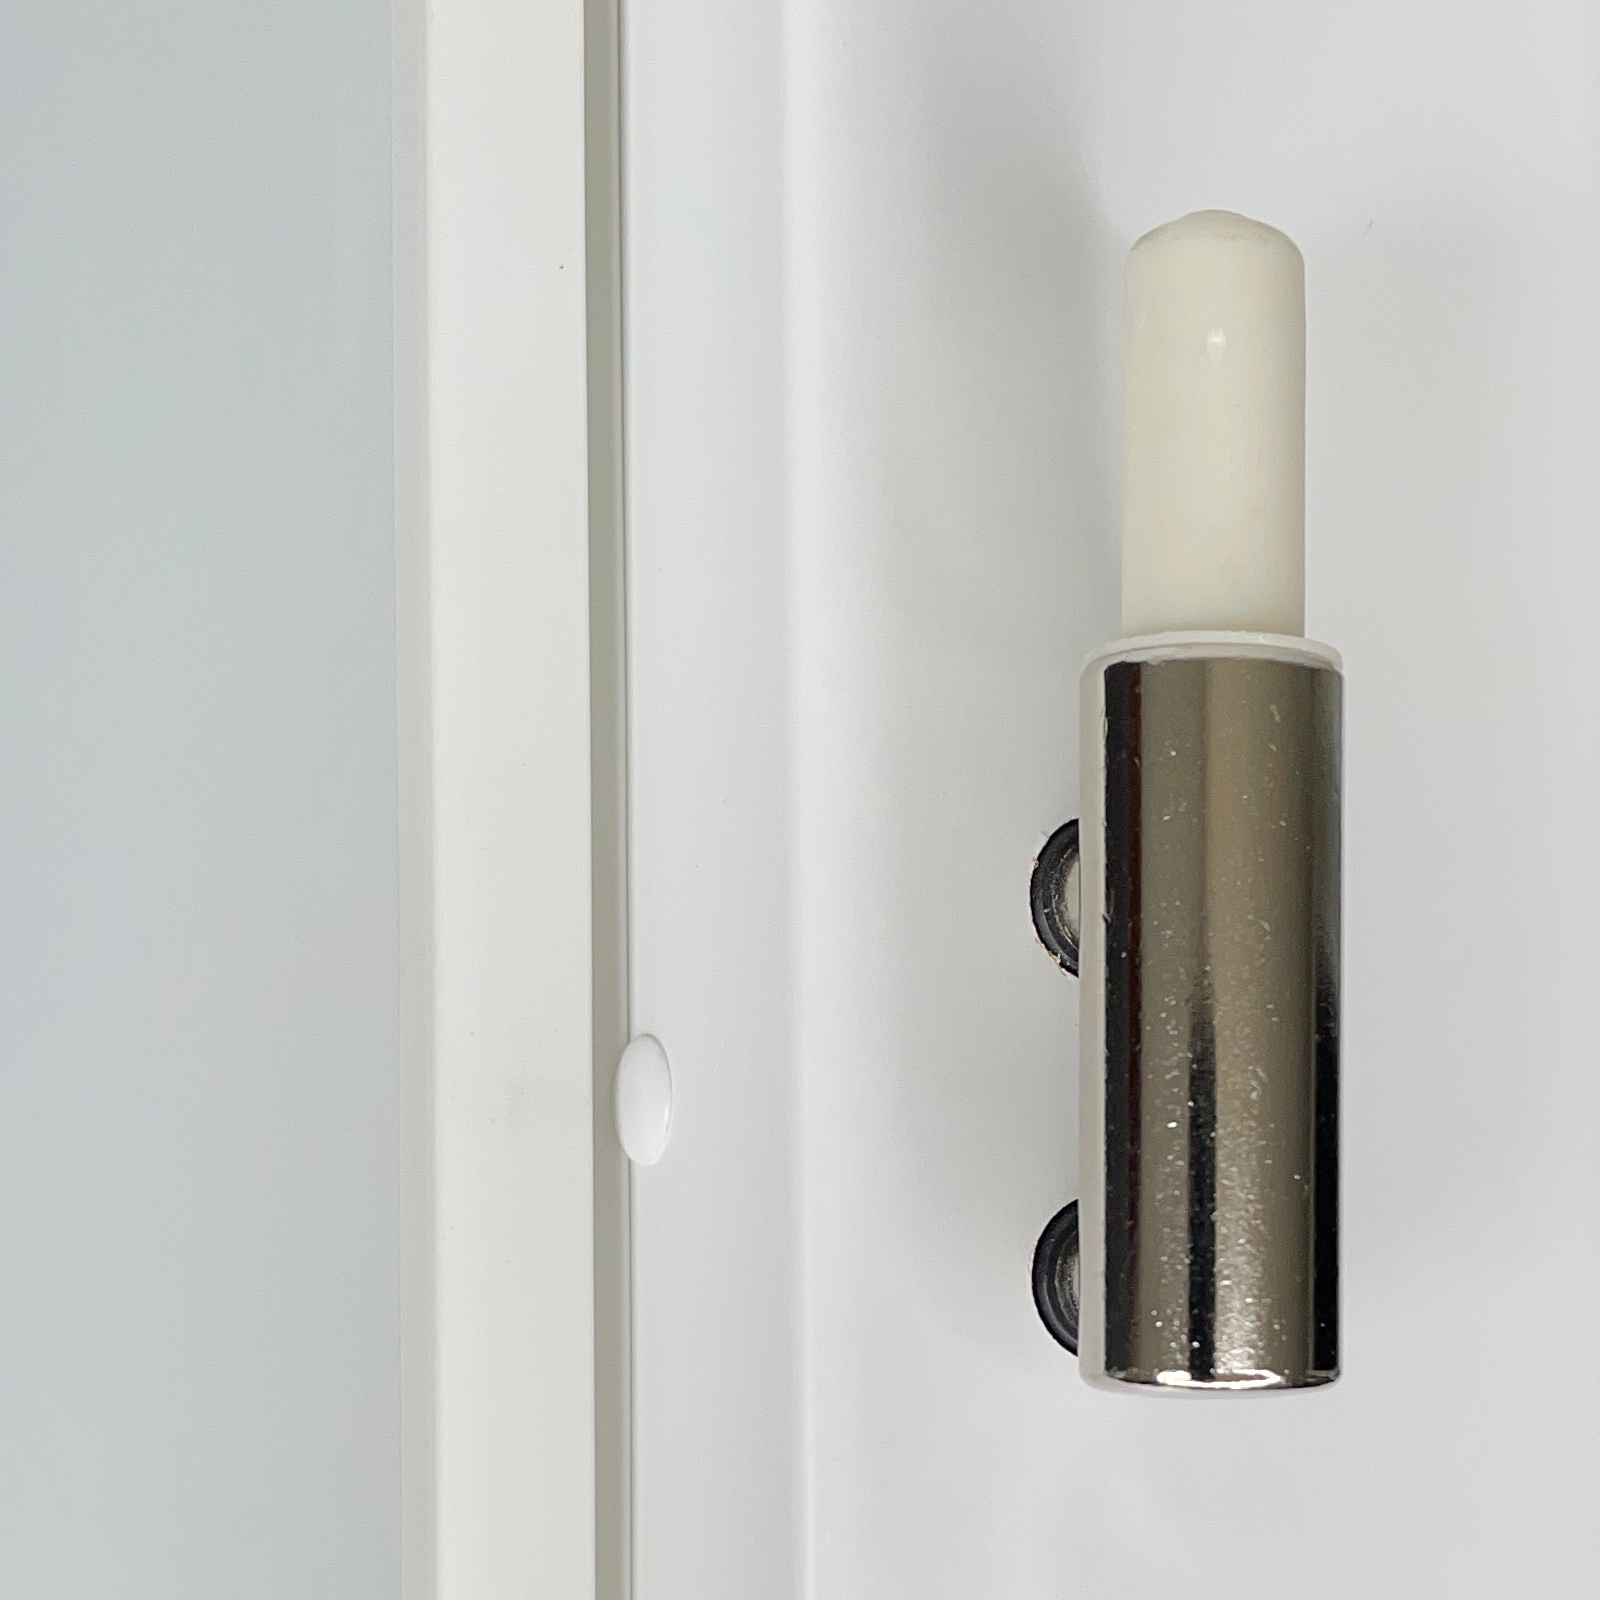 Zimmertür mit Zarge und Lichtausschnitt brillant-weiß 3 Rillen aufrecht Designkante - Modell Designtür VM33LA